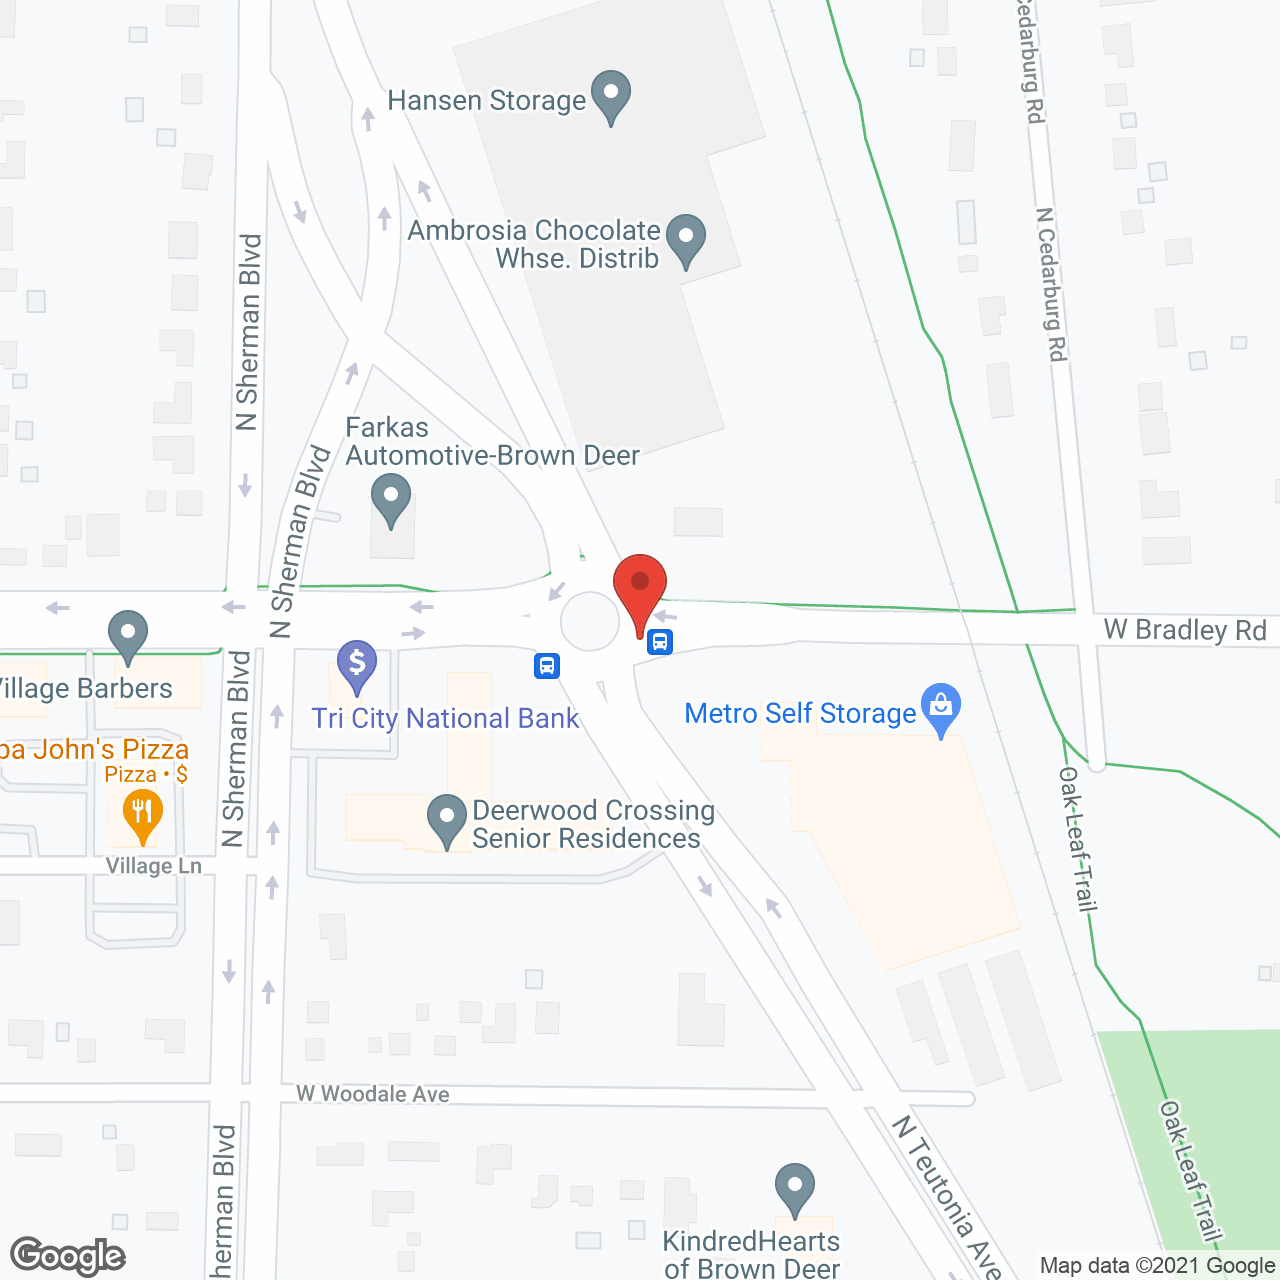 Deerwood Crossing Senior Residence in google map